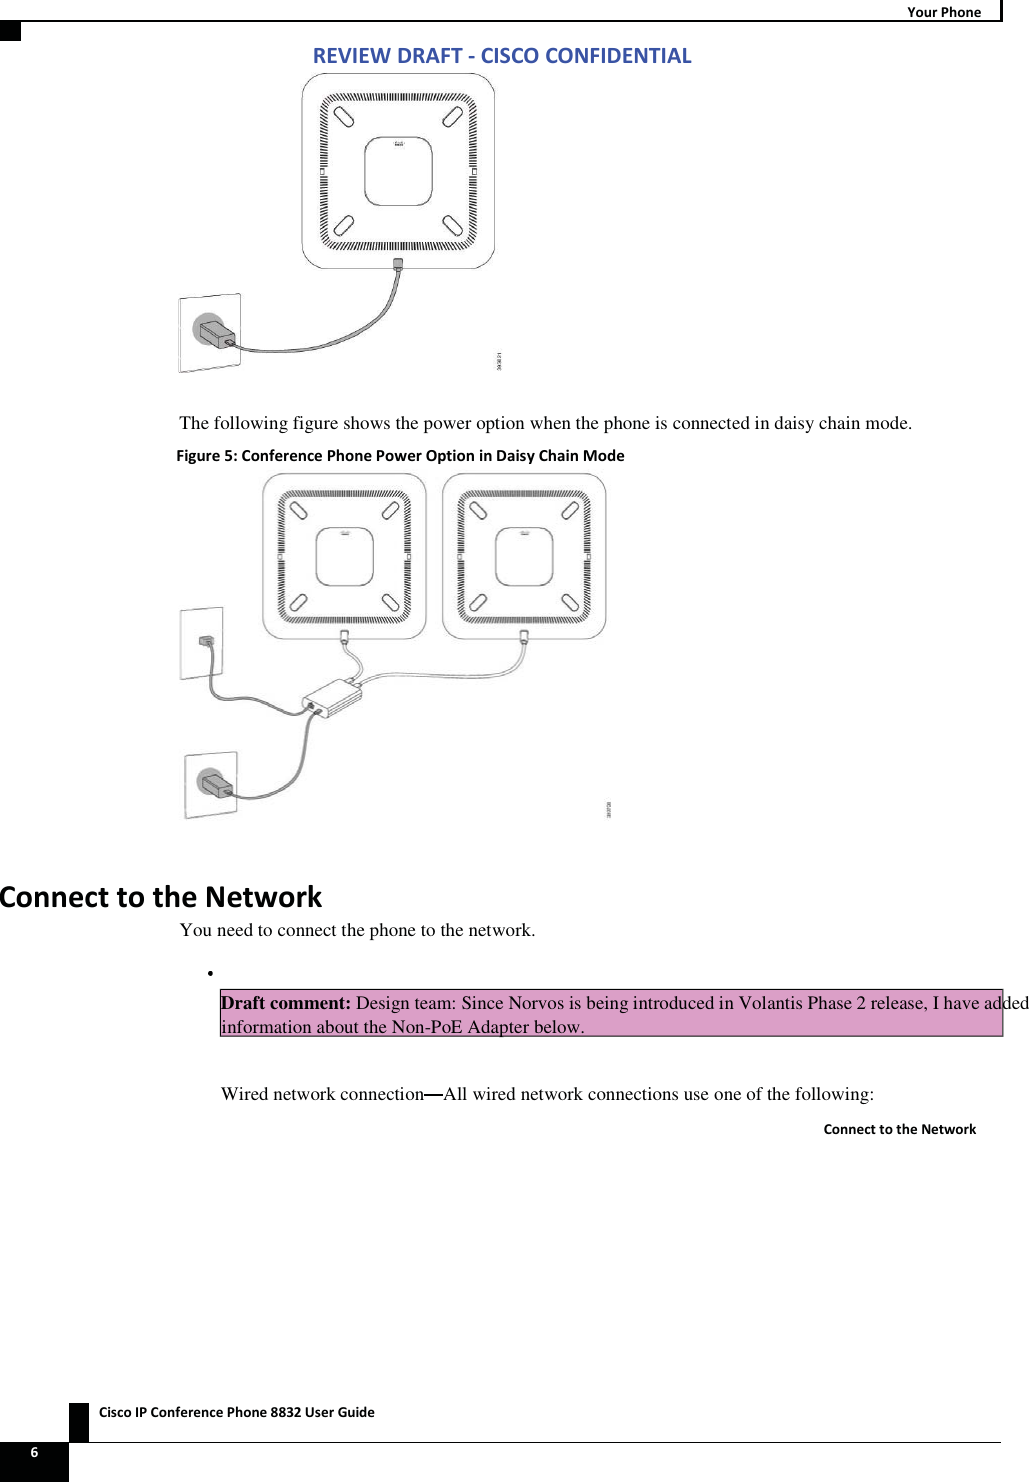 Zs/tZ&amp;dͲ/^KKE&amp;/Ed/&gt;   ŝƐĐŽ/WŽŶĨĞƌĞŶĐĞWŚŽŶĞϴϴϯϮhƐĞƌ&apos;ƵŝĚĞ ϲ zŽƵƌ WŚŽŶĞ  The following figure shows the power option when the phone is connected in daisy chain mode. &amp;ŝŐƵƌĞϱ͗ŽŶĨĞƌĞŶĐĞWŚŽŶĞWŽǁĞƌKƉƚŝŽŶŝŶĂŝƐǇŚĂŝŶDŽĚĞ  ŽŶŶĞĐƚƚŽƚŚĞEĞƚǁŽƌŬYou need to connect the phone to the network.  Draft comment: Design team: Since Norvos is being introduced in Volantis Phase 2 release, I have added information about the Non-PoE Adapter below. Wired network connection All wired network connections use one of the following: ŽŶŶĞĐƚƚŽƚŚĞEĞƚǁŽƌŬ 